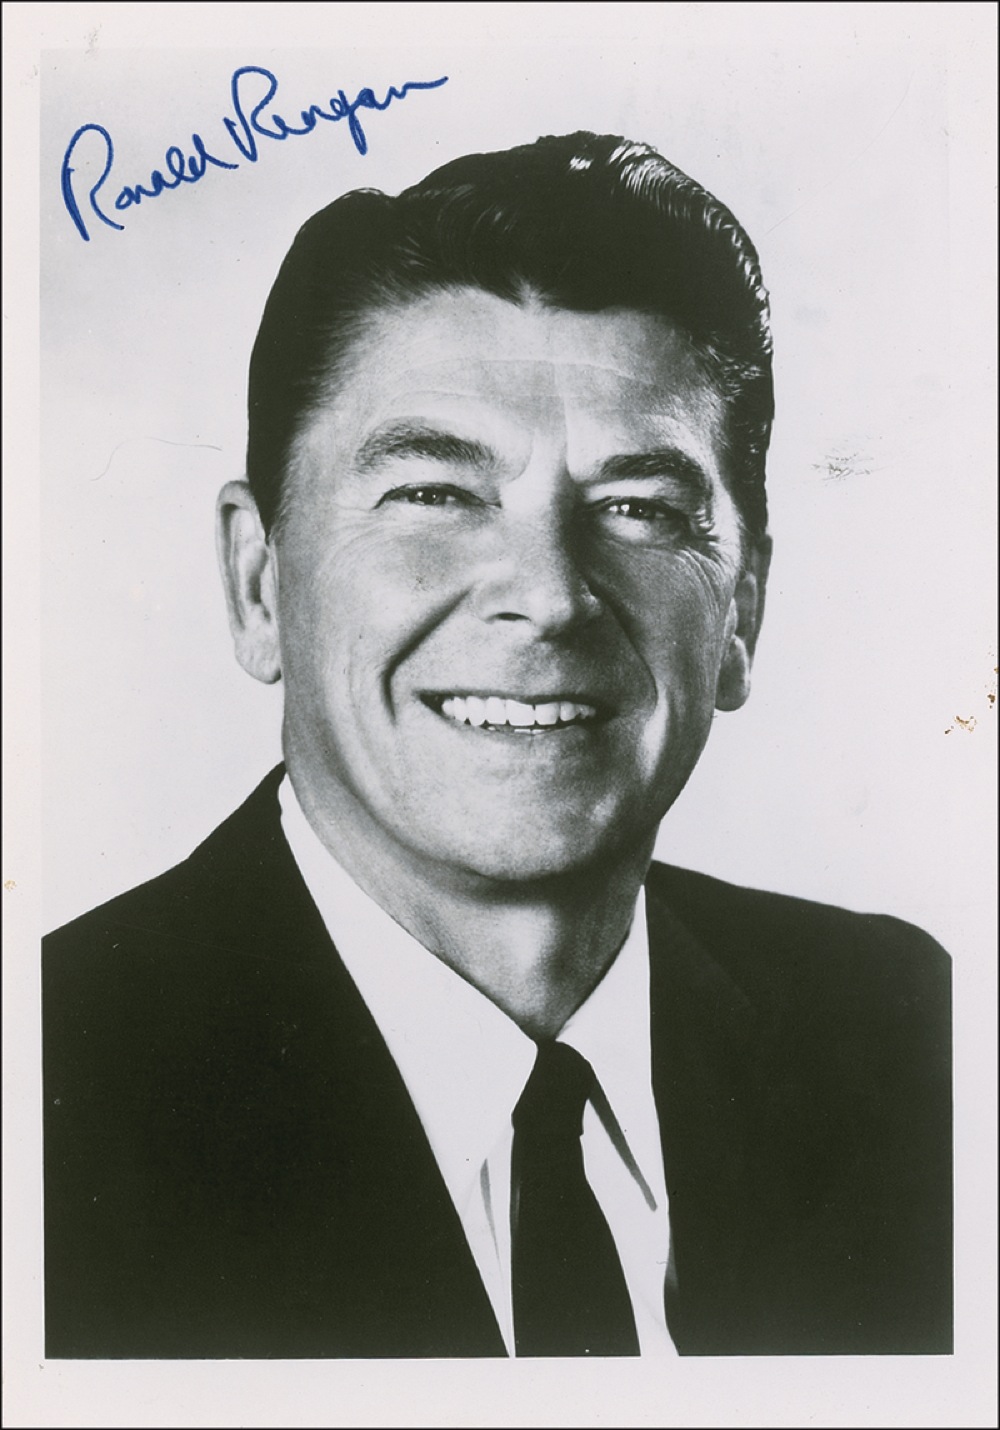 Lot #94 Ronald Reagan